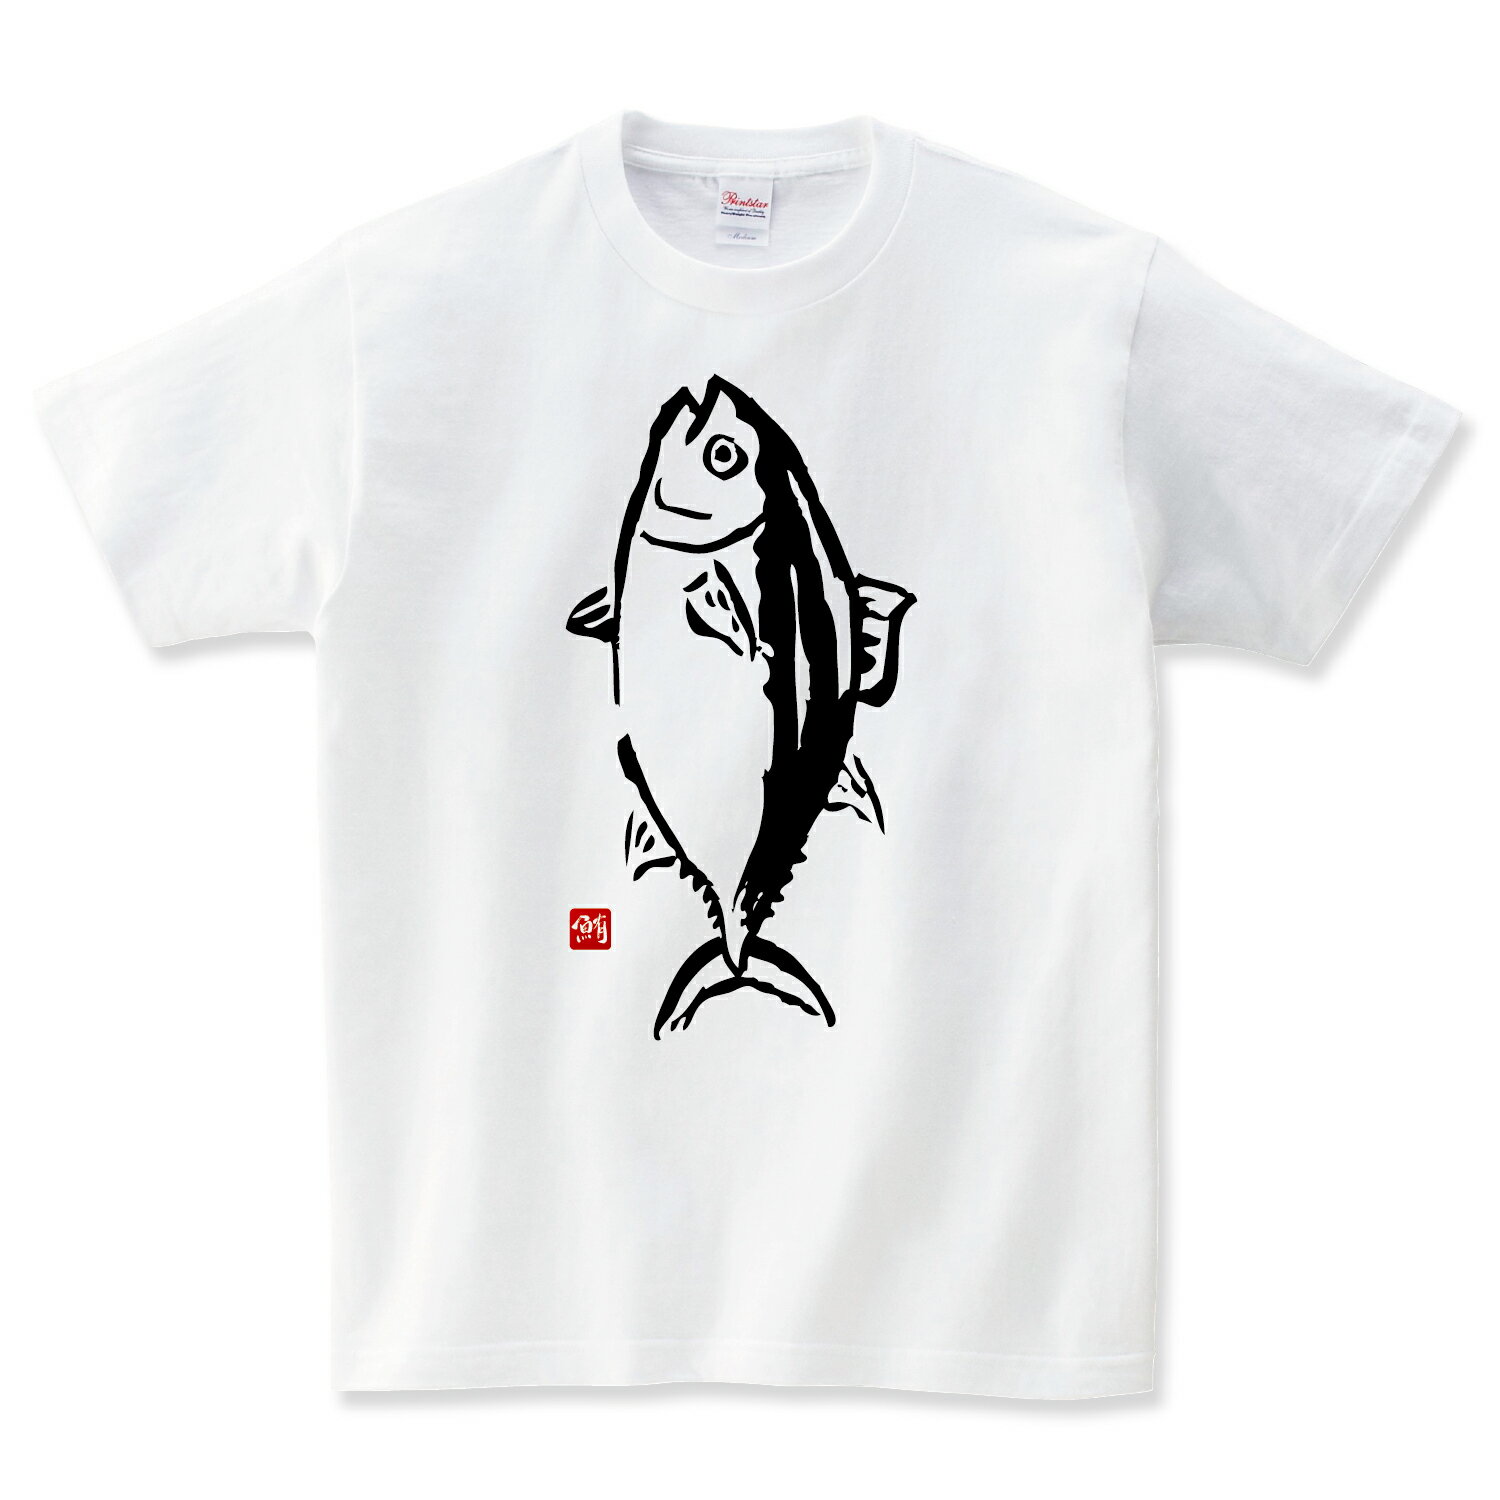 マグロの水揚げ Tシャツ メンズ レディース キッズ 子供服 半袖 大きいサイズ プレゼント ギフト おもしろTシャツ 釣り